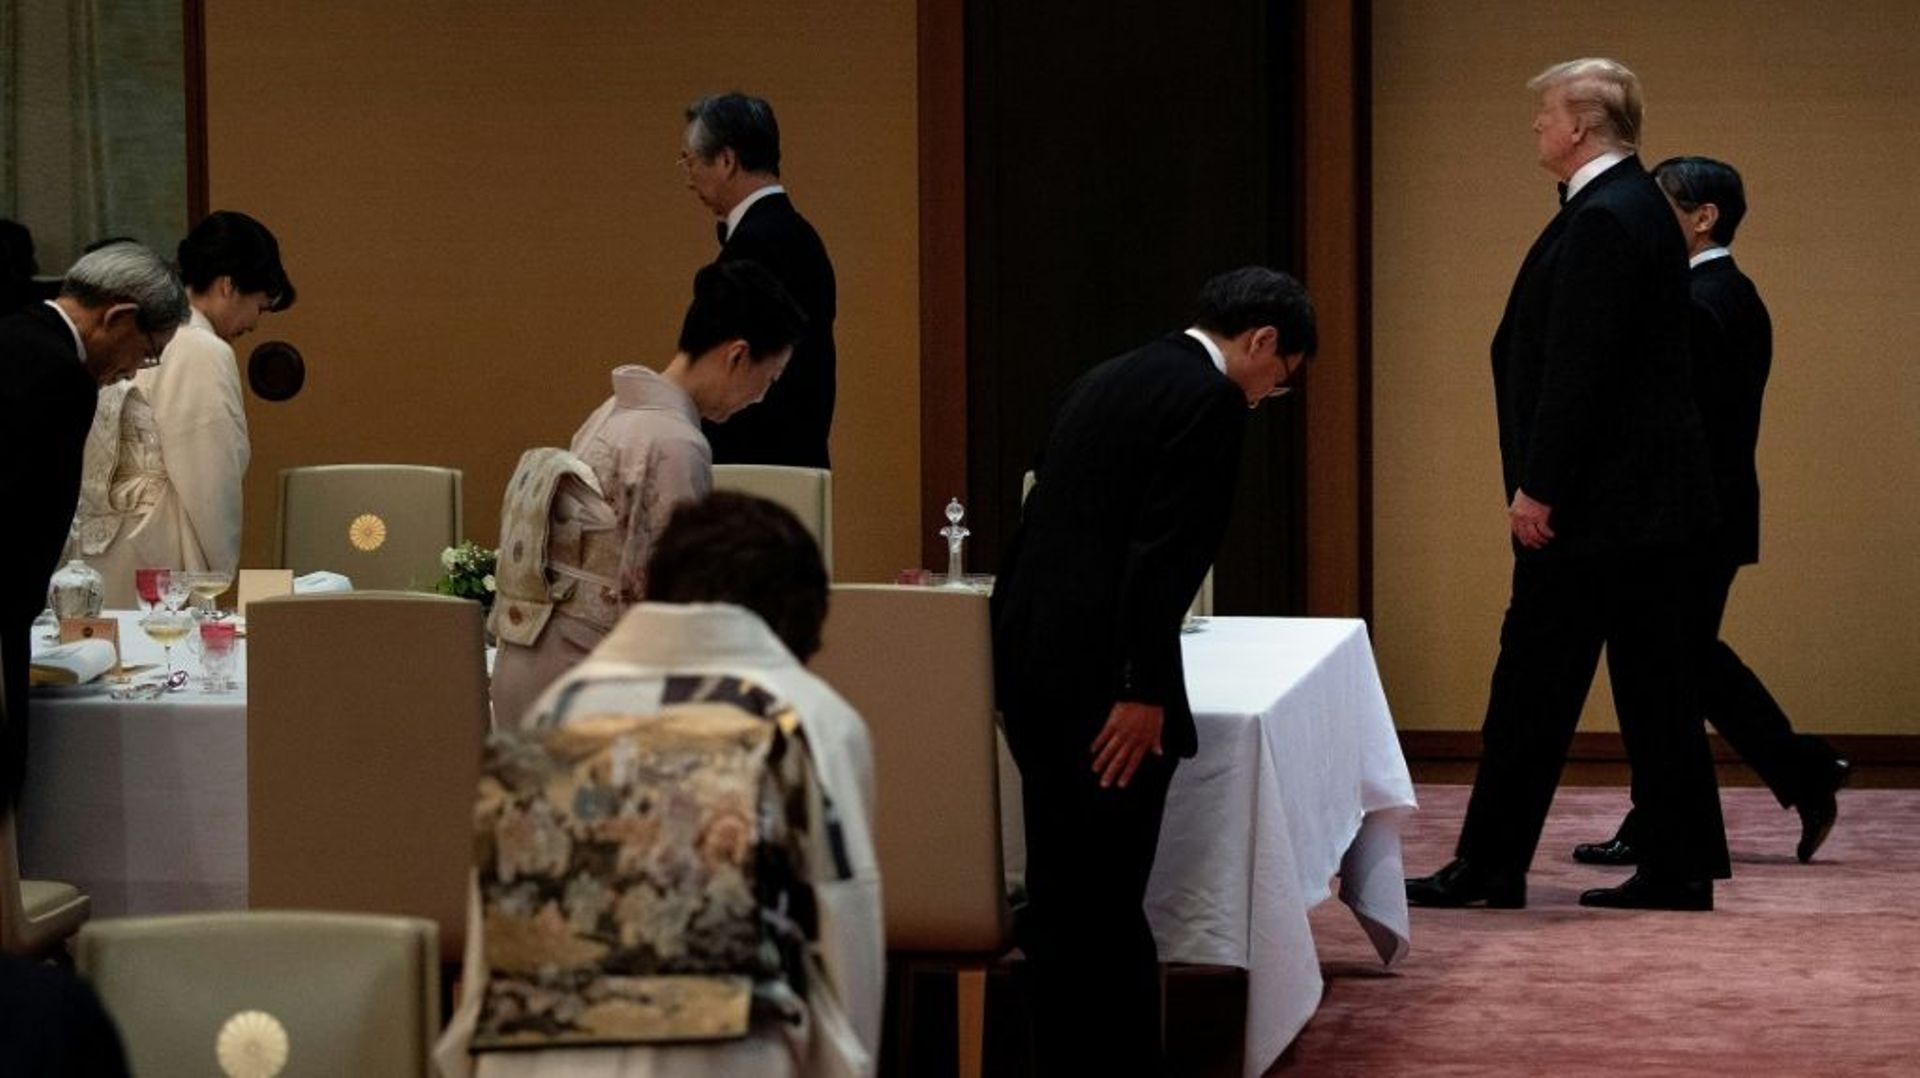 Le président américain Donald Trump accompagné de l'empereur du Japon Naruhito à leur arrivée au diner au palais impérial à Tokyo, le 27 mai 2019